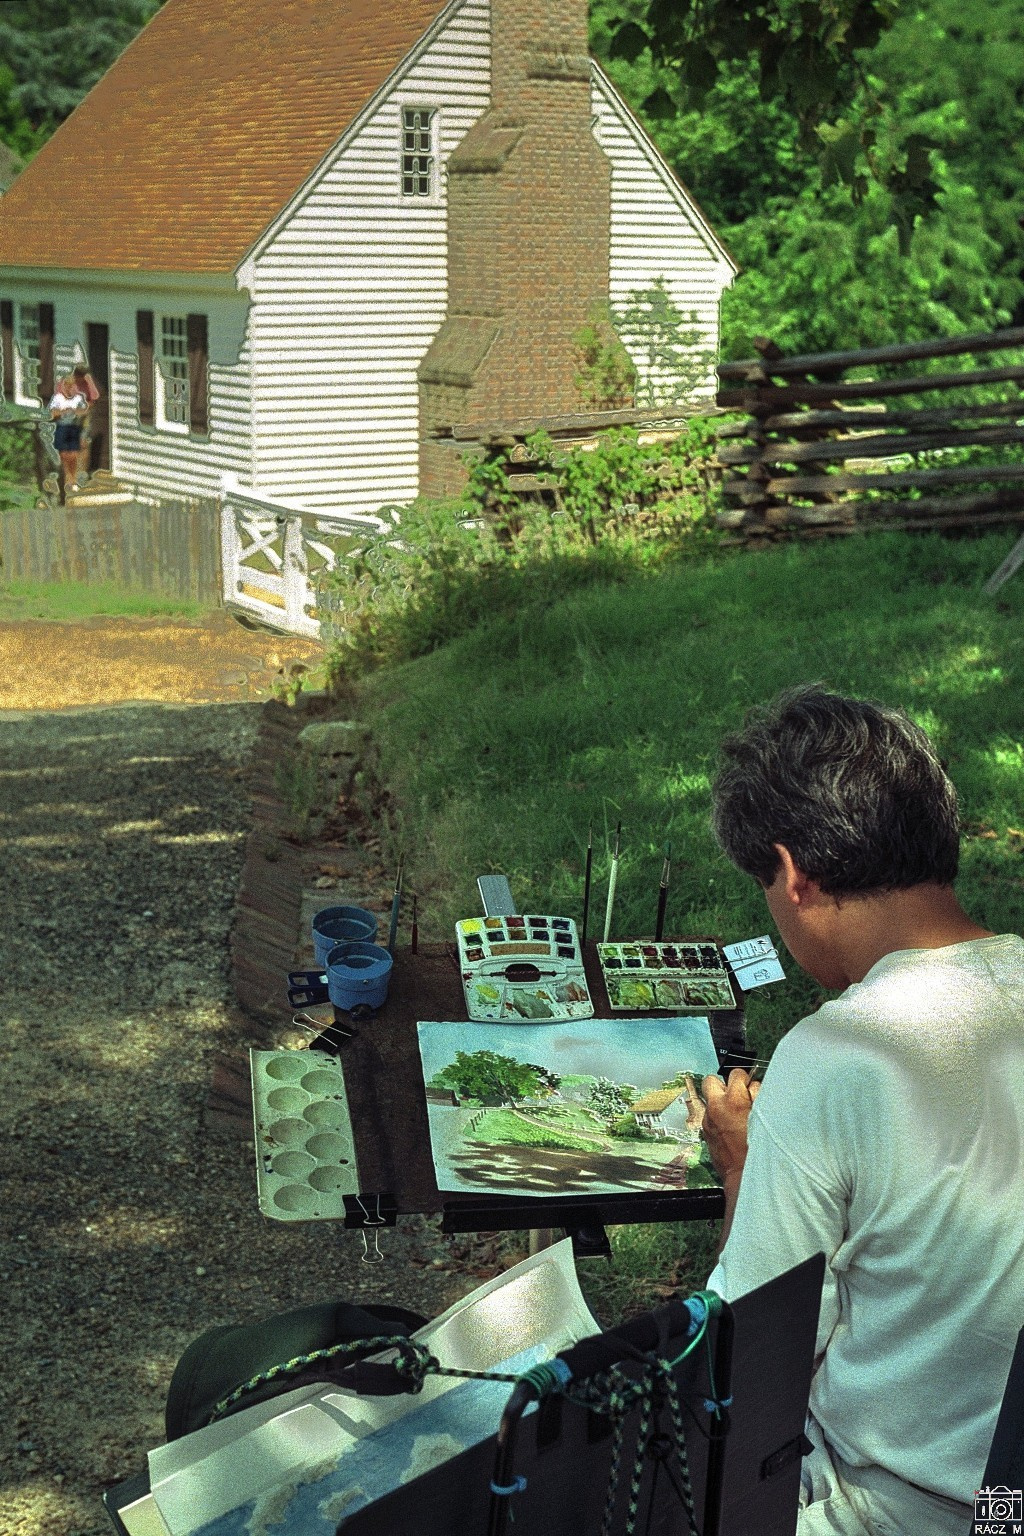 festő - Colonial Williamsburg